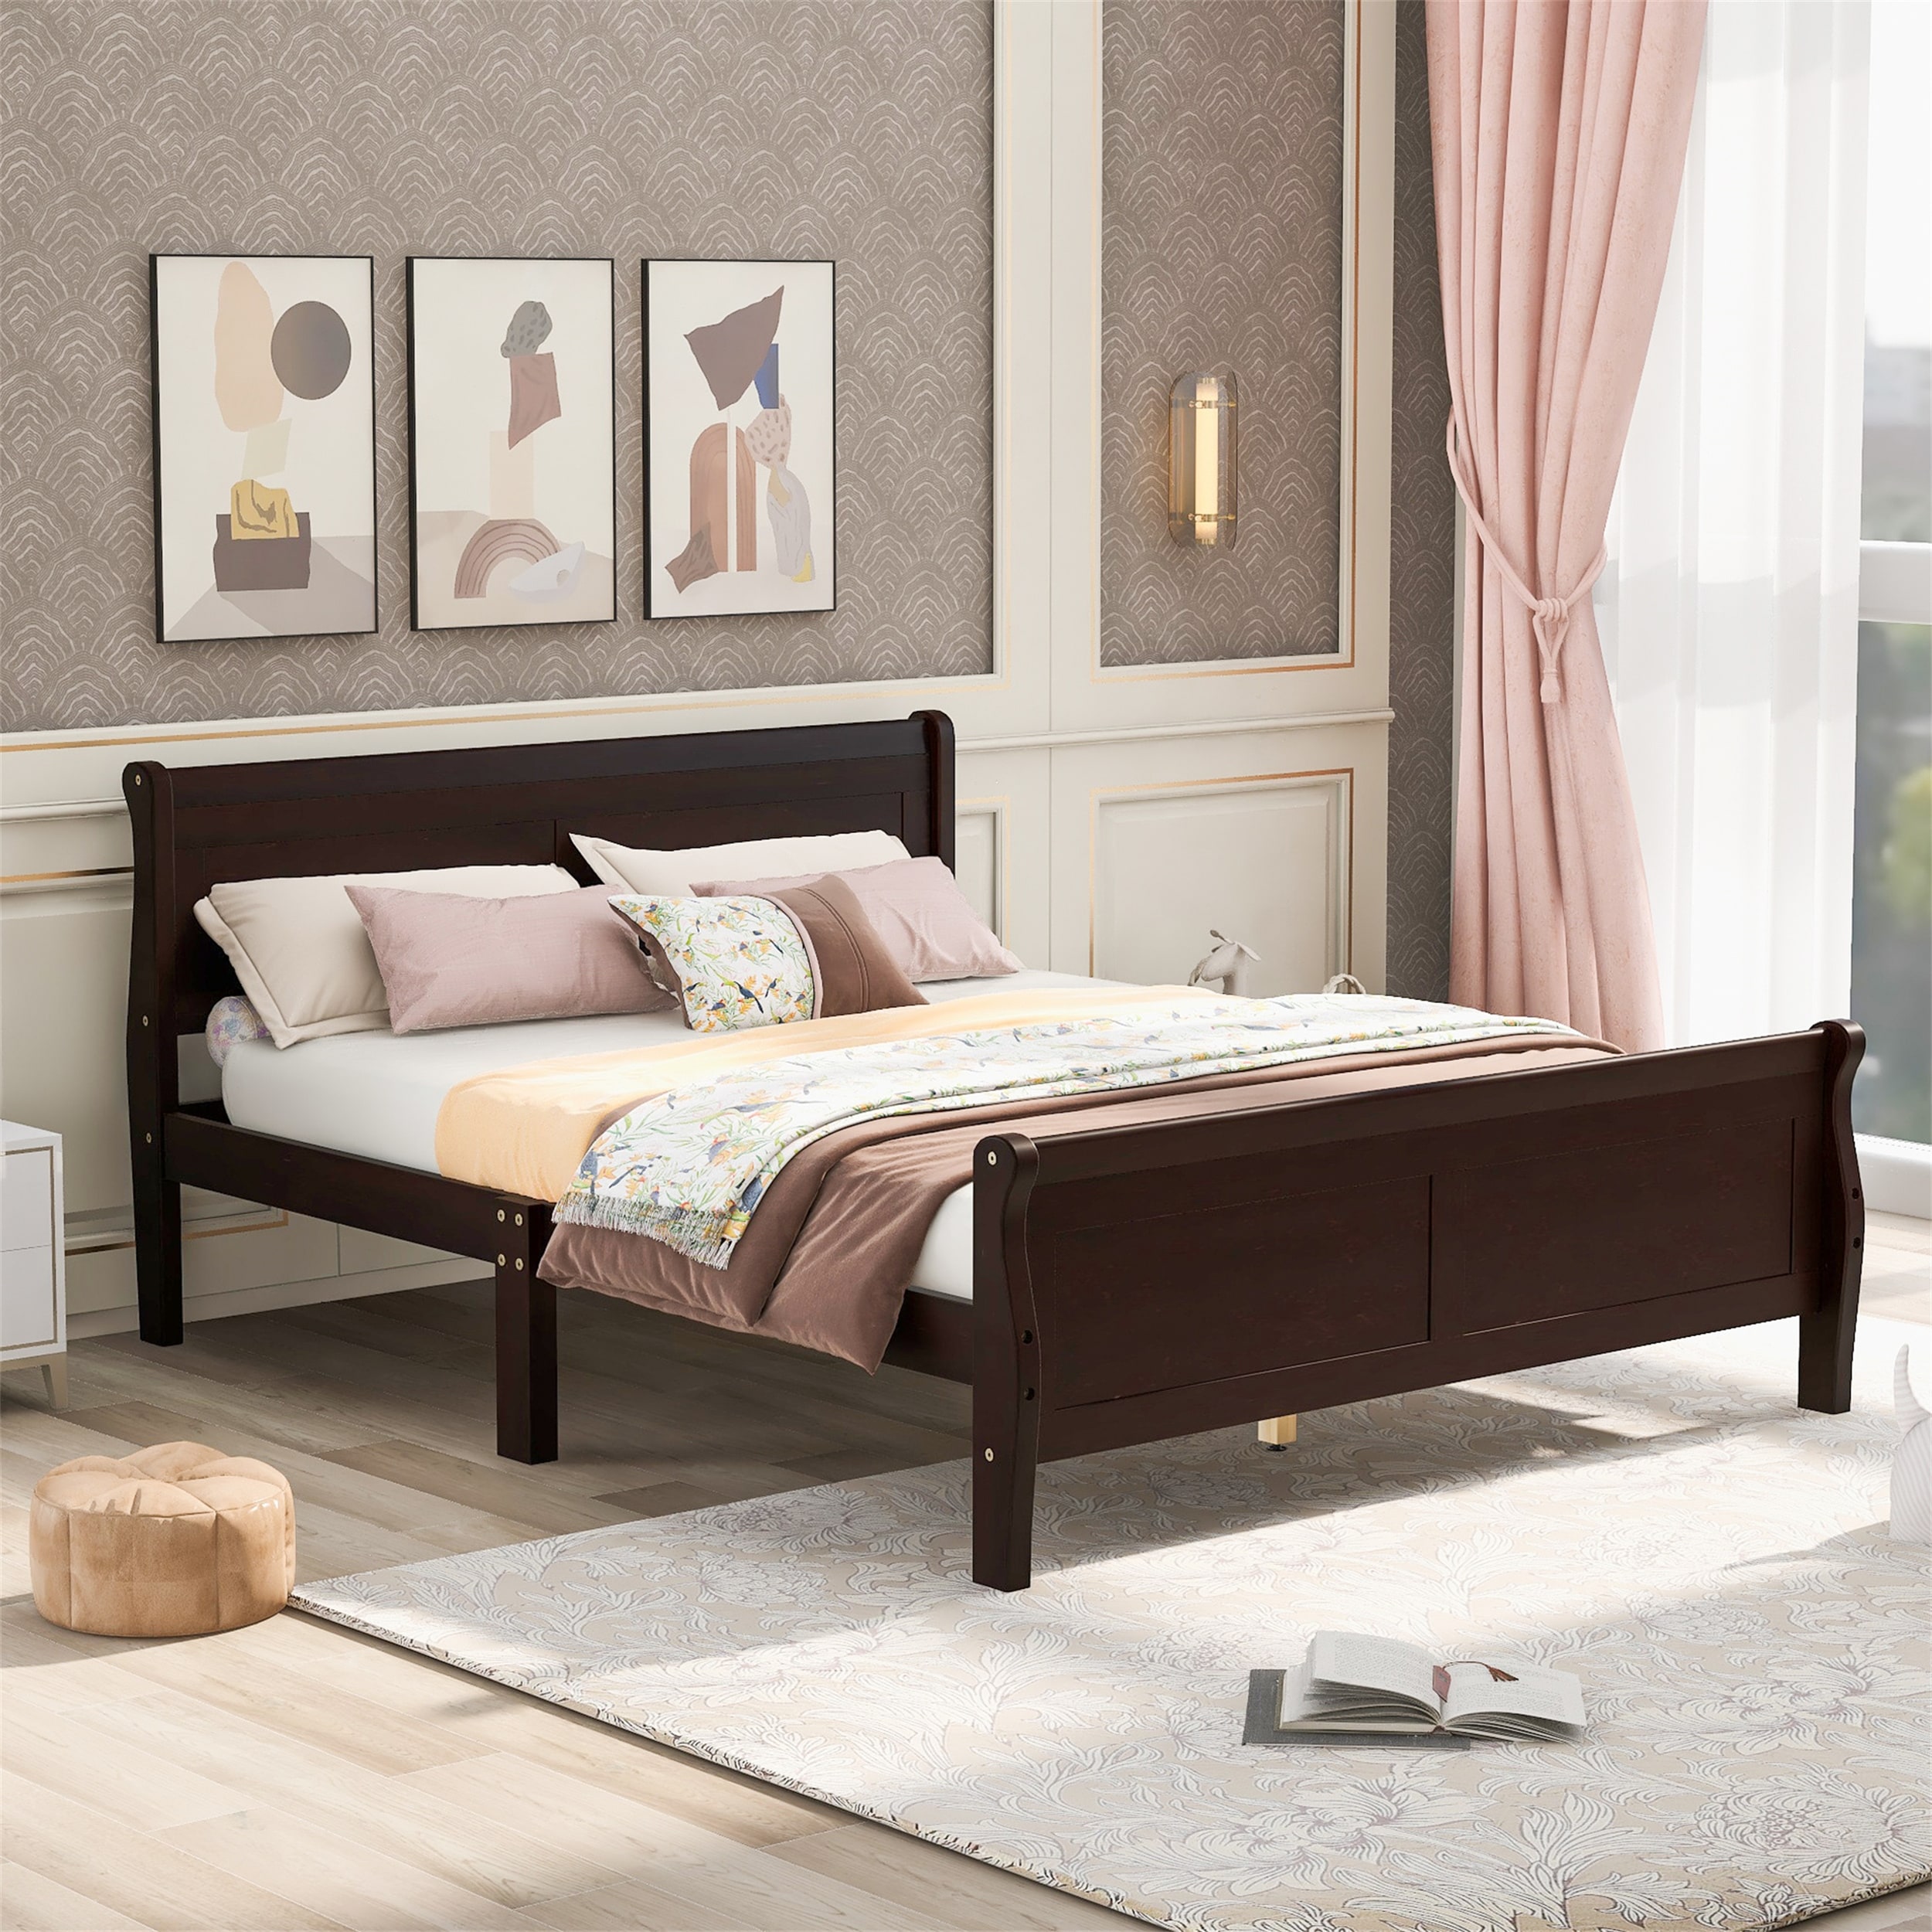 Solid Wood Platform Bed W/ Headboard Full Size Bed Frame Slat Support Espresso 